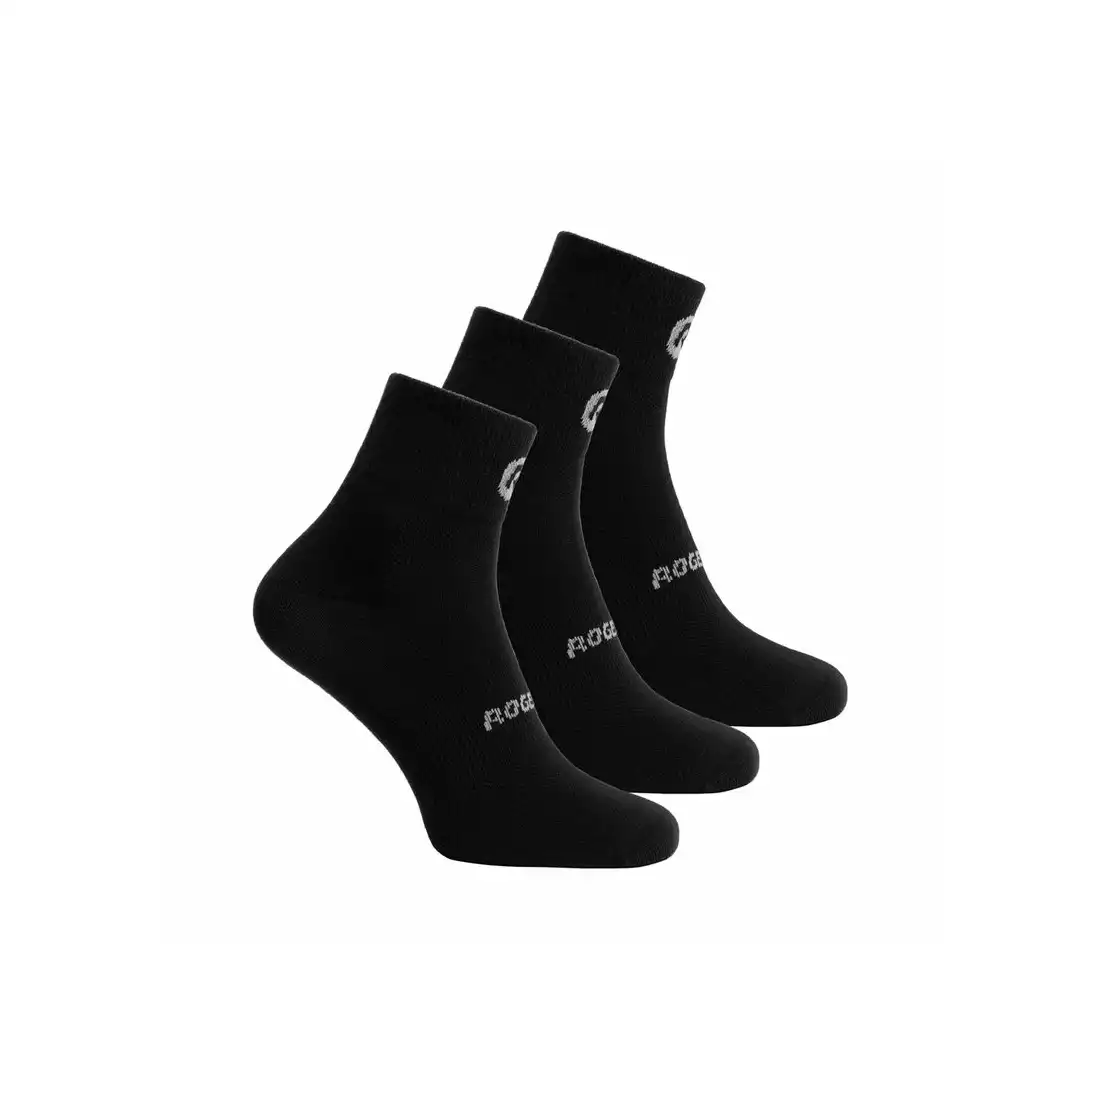 ROGELLI CORE cycling socks 3-pack black